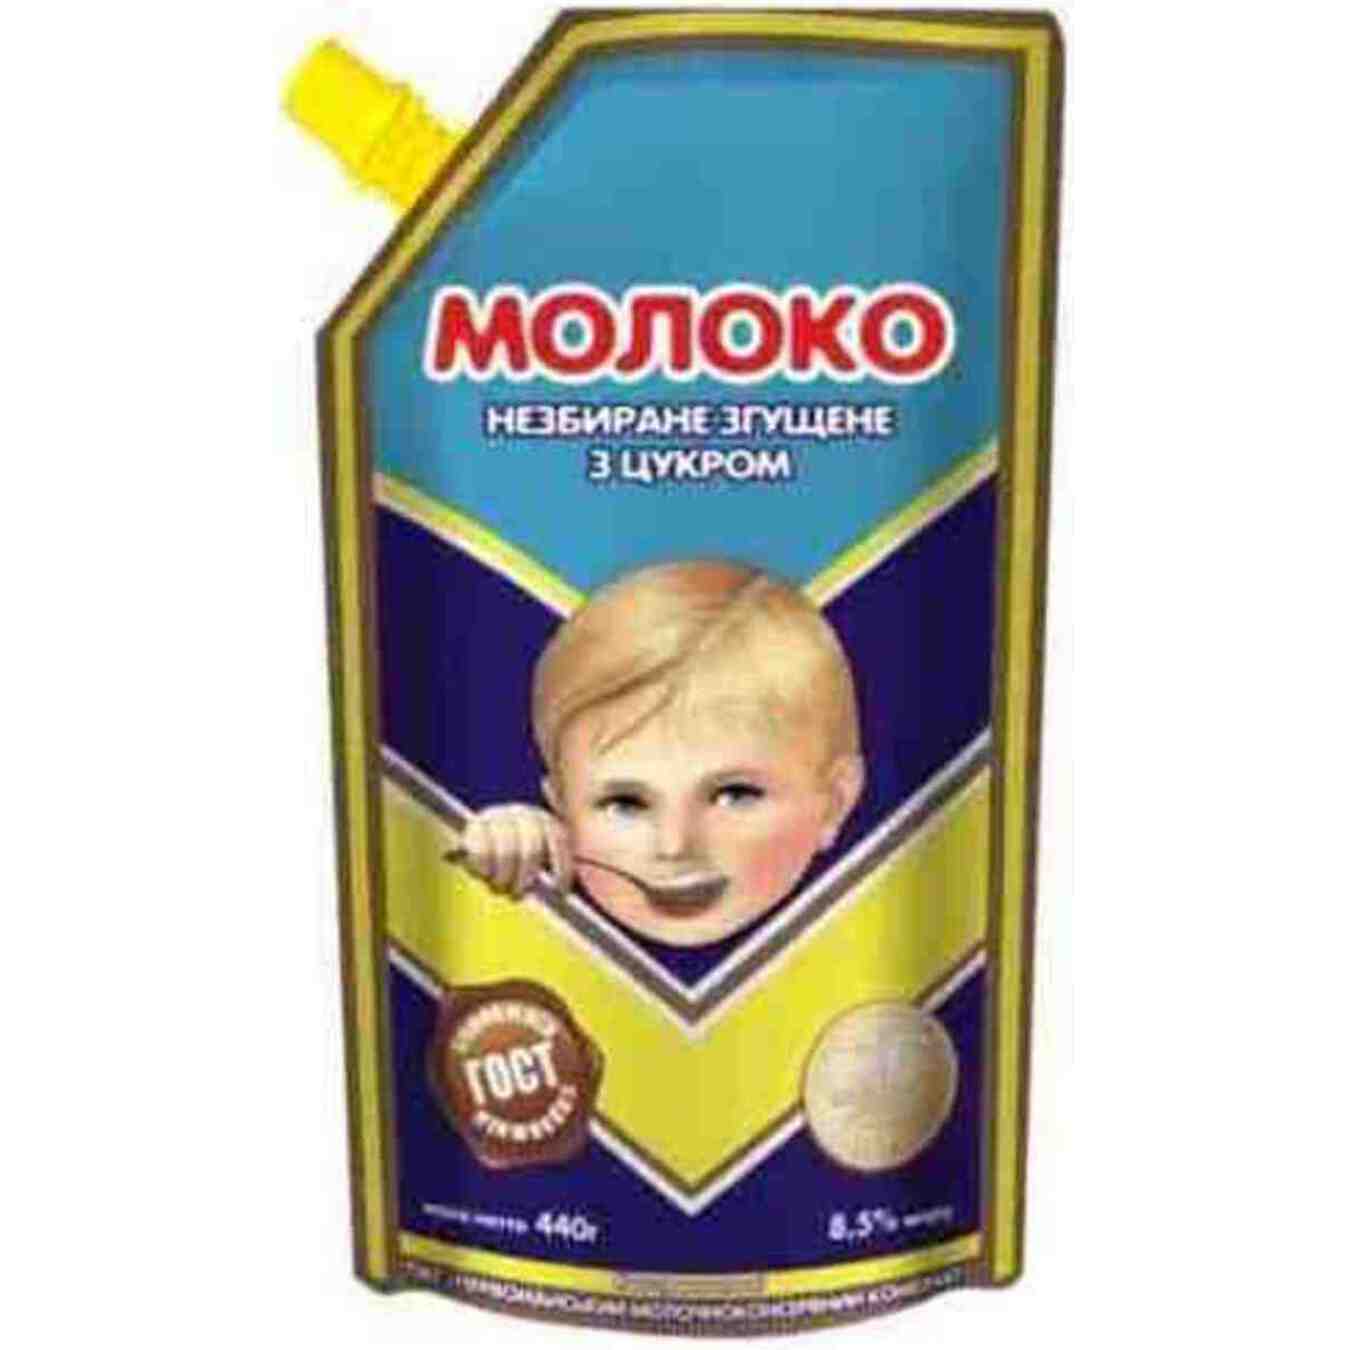 Молоко згущене Первомайський МКК незбиране з цукром 8,5% 440г ДСТУ